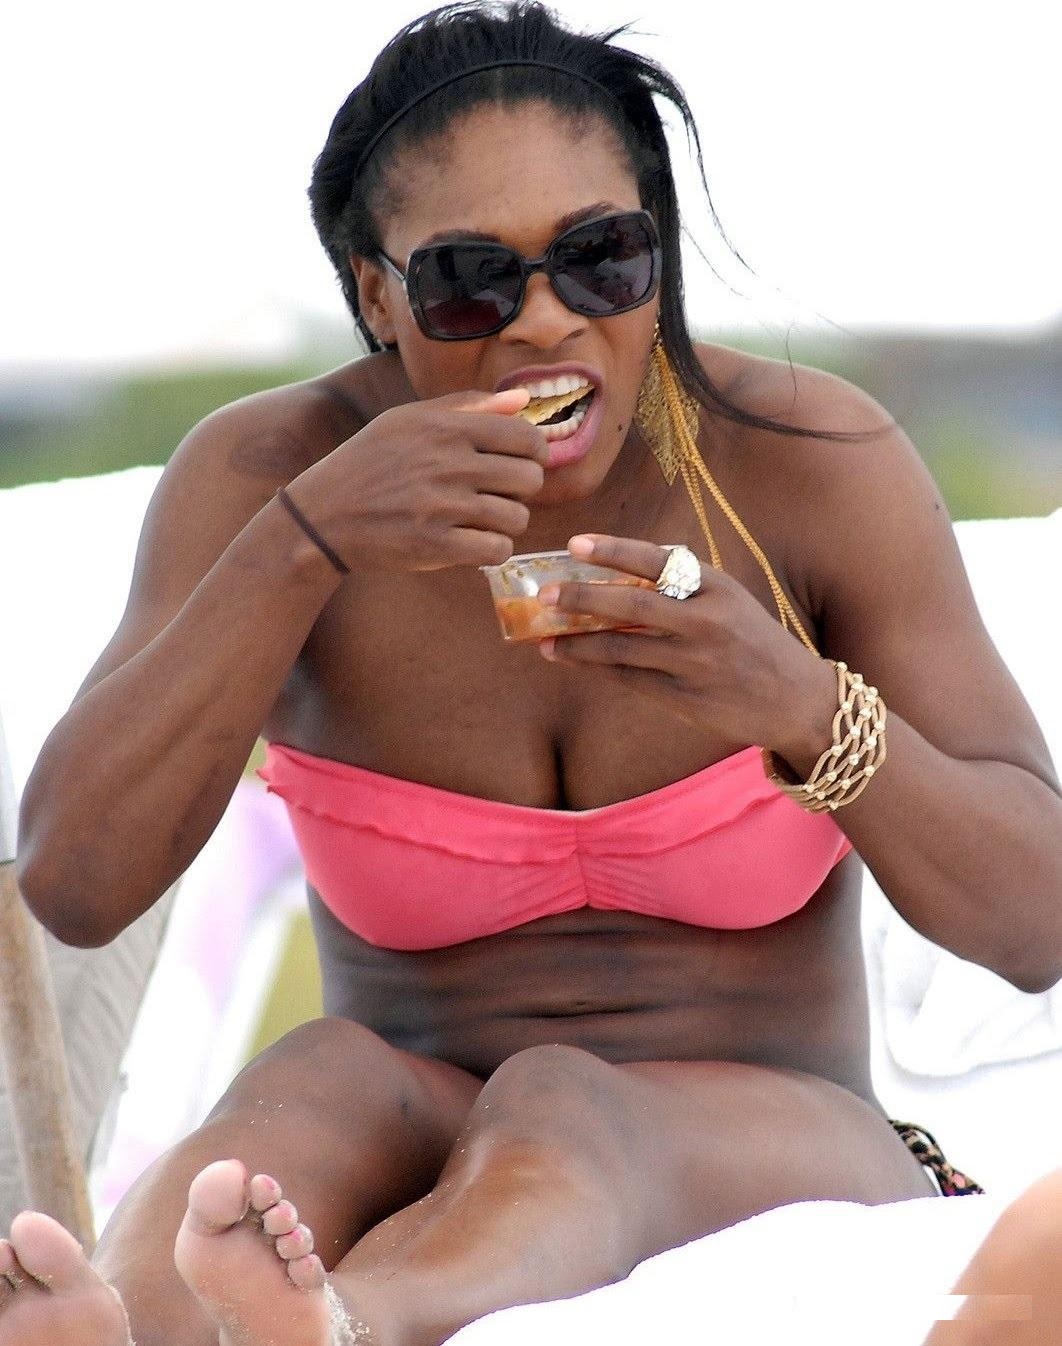 Serena Williams' Vanity Fair Cover pic